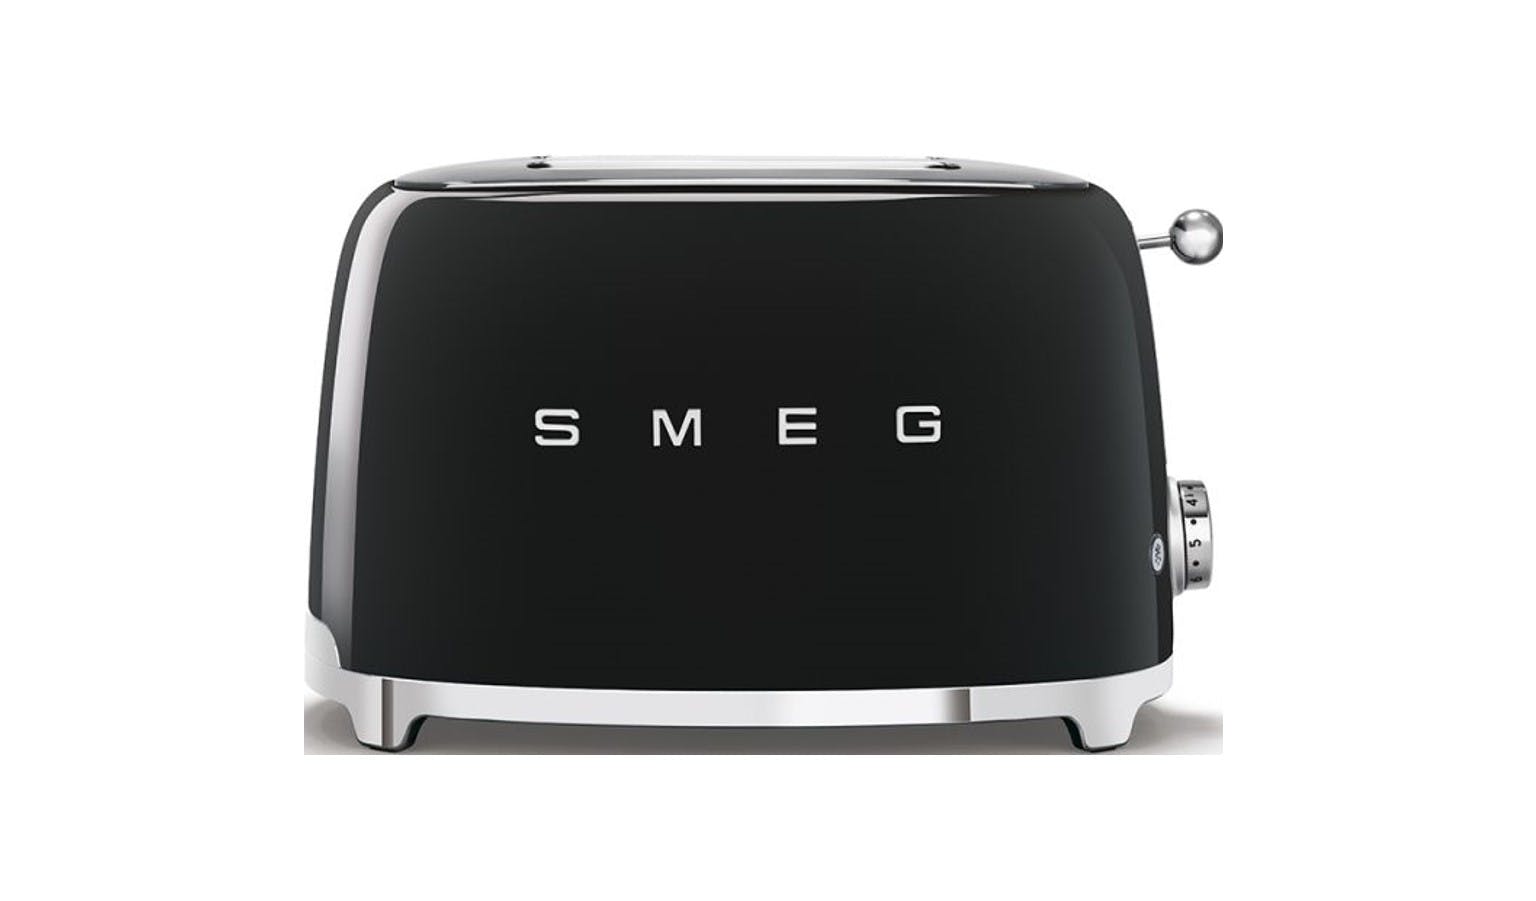 Smeg Pink 2-Slice Toaster + Reviews | Crate & Barrel